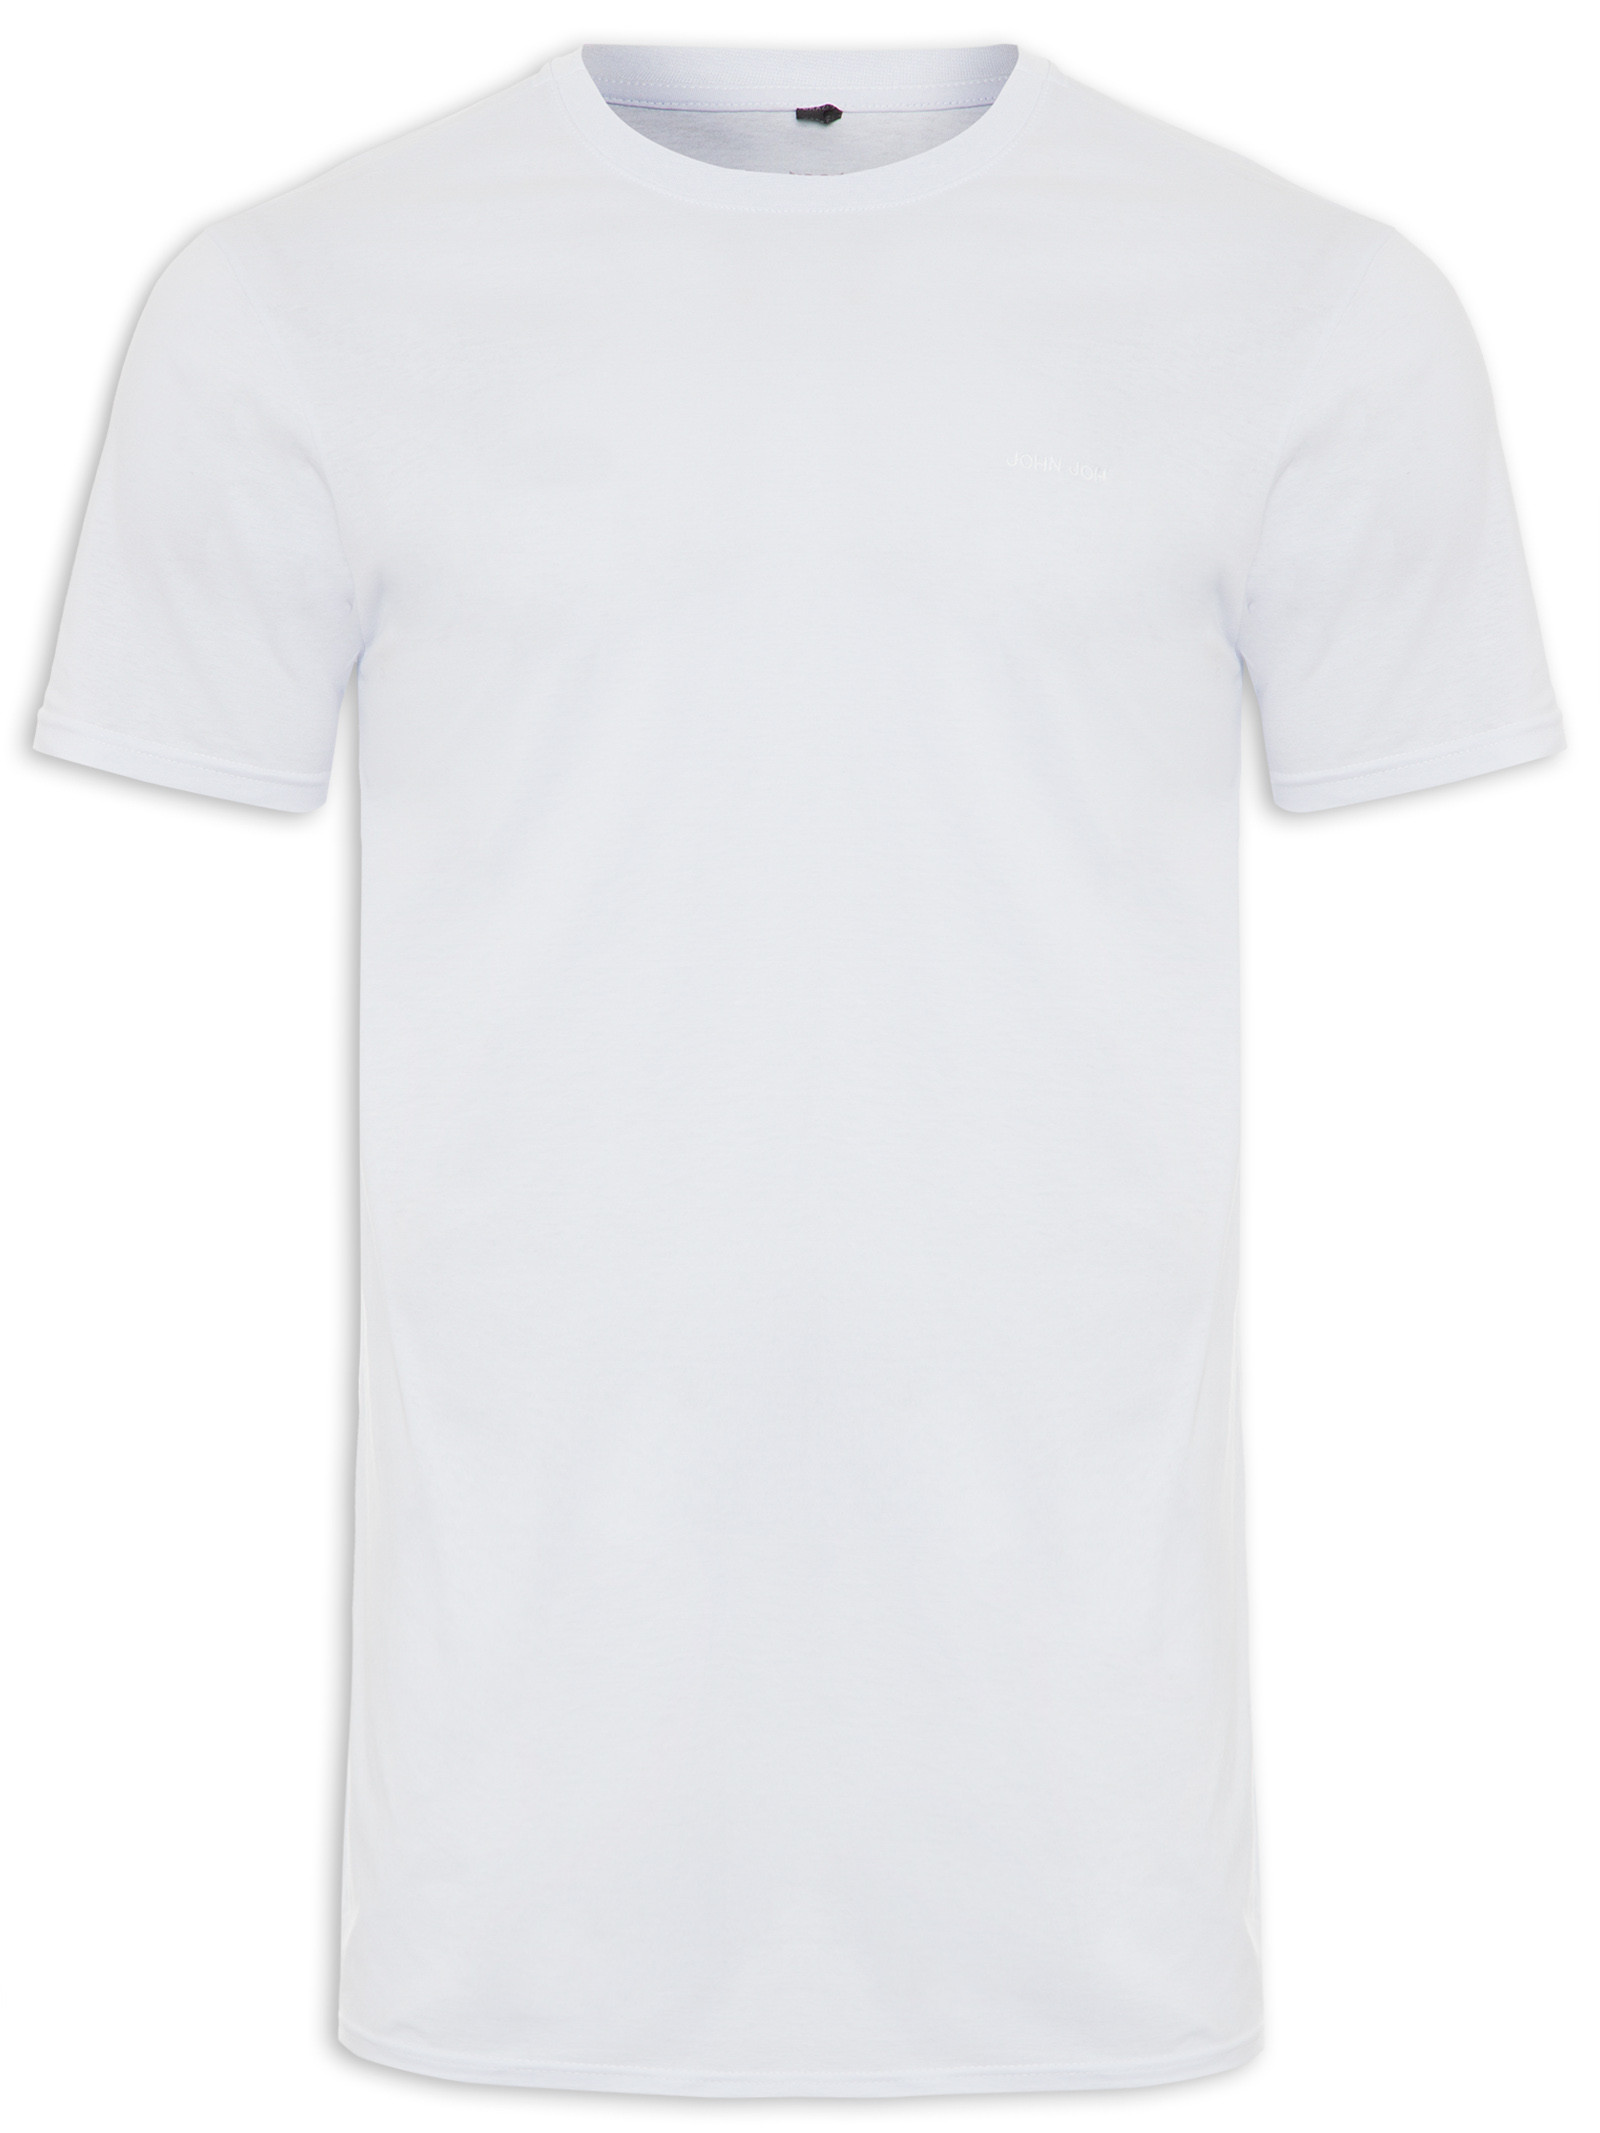 T-shirt Yves - John John - Branco - Oqvestir